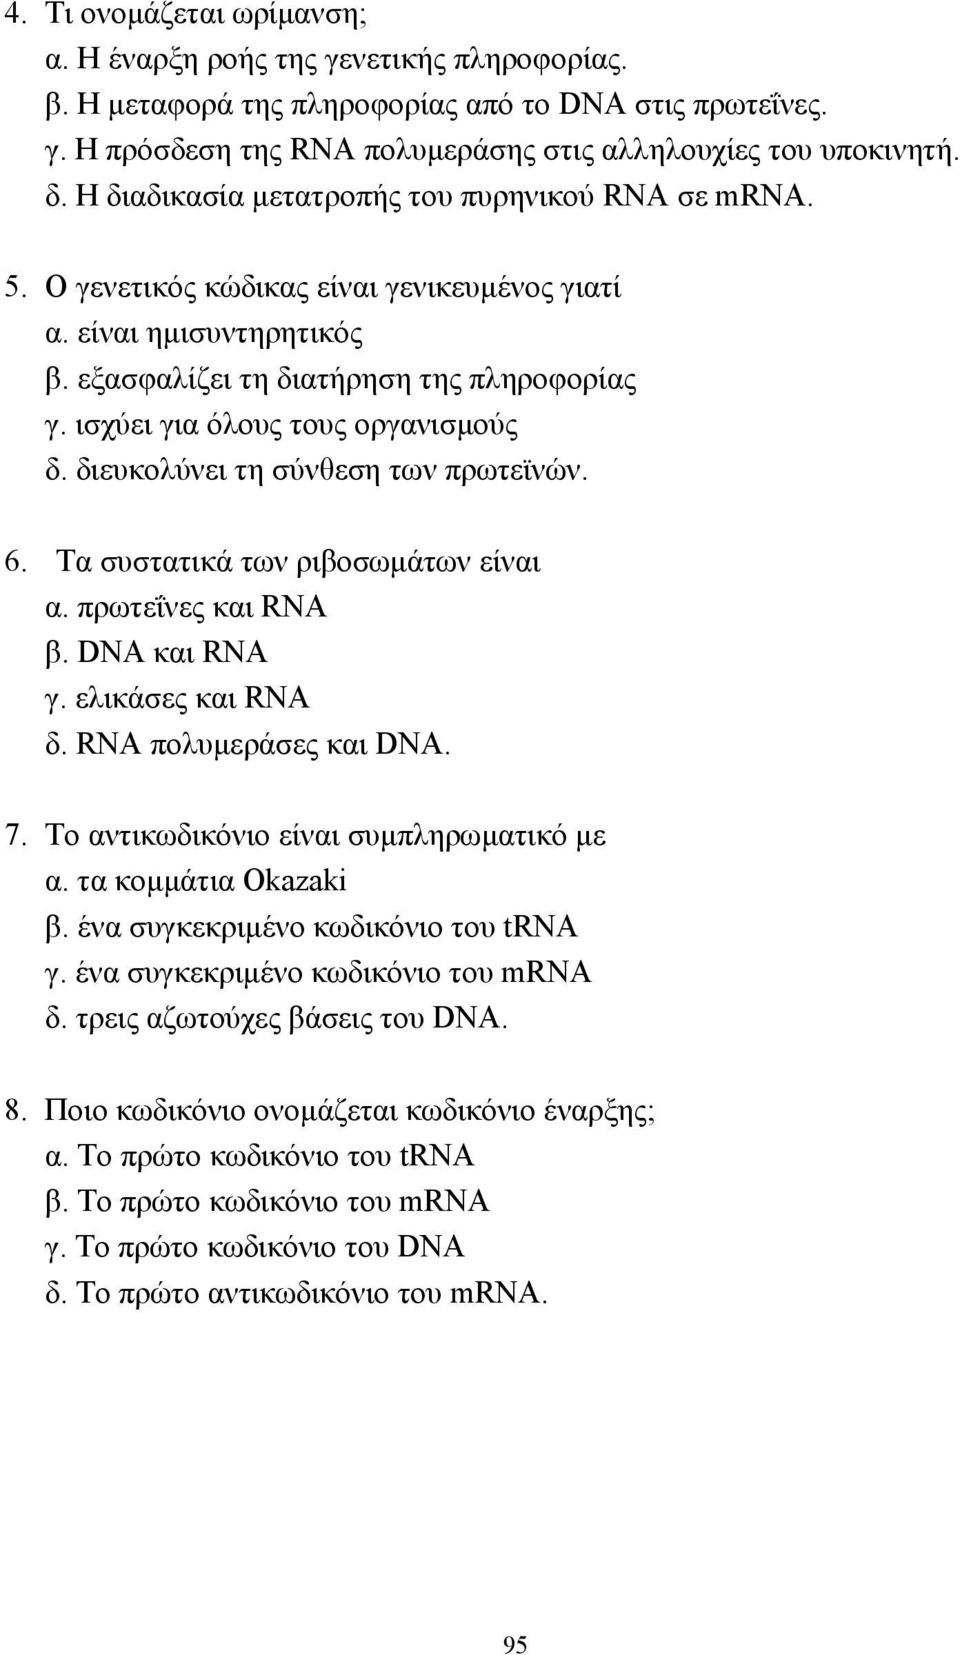 ισχύει για όλους τους οργανισµούς δ. διευκολύνει τη σύνθεση των πρωτεϊνών. 6. Τα συστατικά των ριβοσωµάτων είναι α. πρωτεΐνες και RNA β. DNA και RNA γ. ελικάσες και RNA δ. RNA πολυµεράσες και DNA. 7.